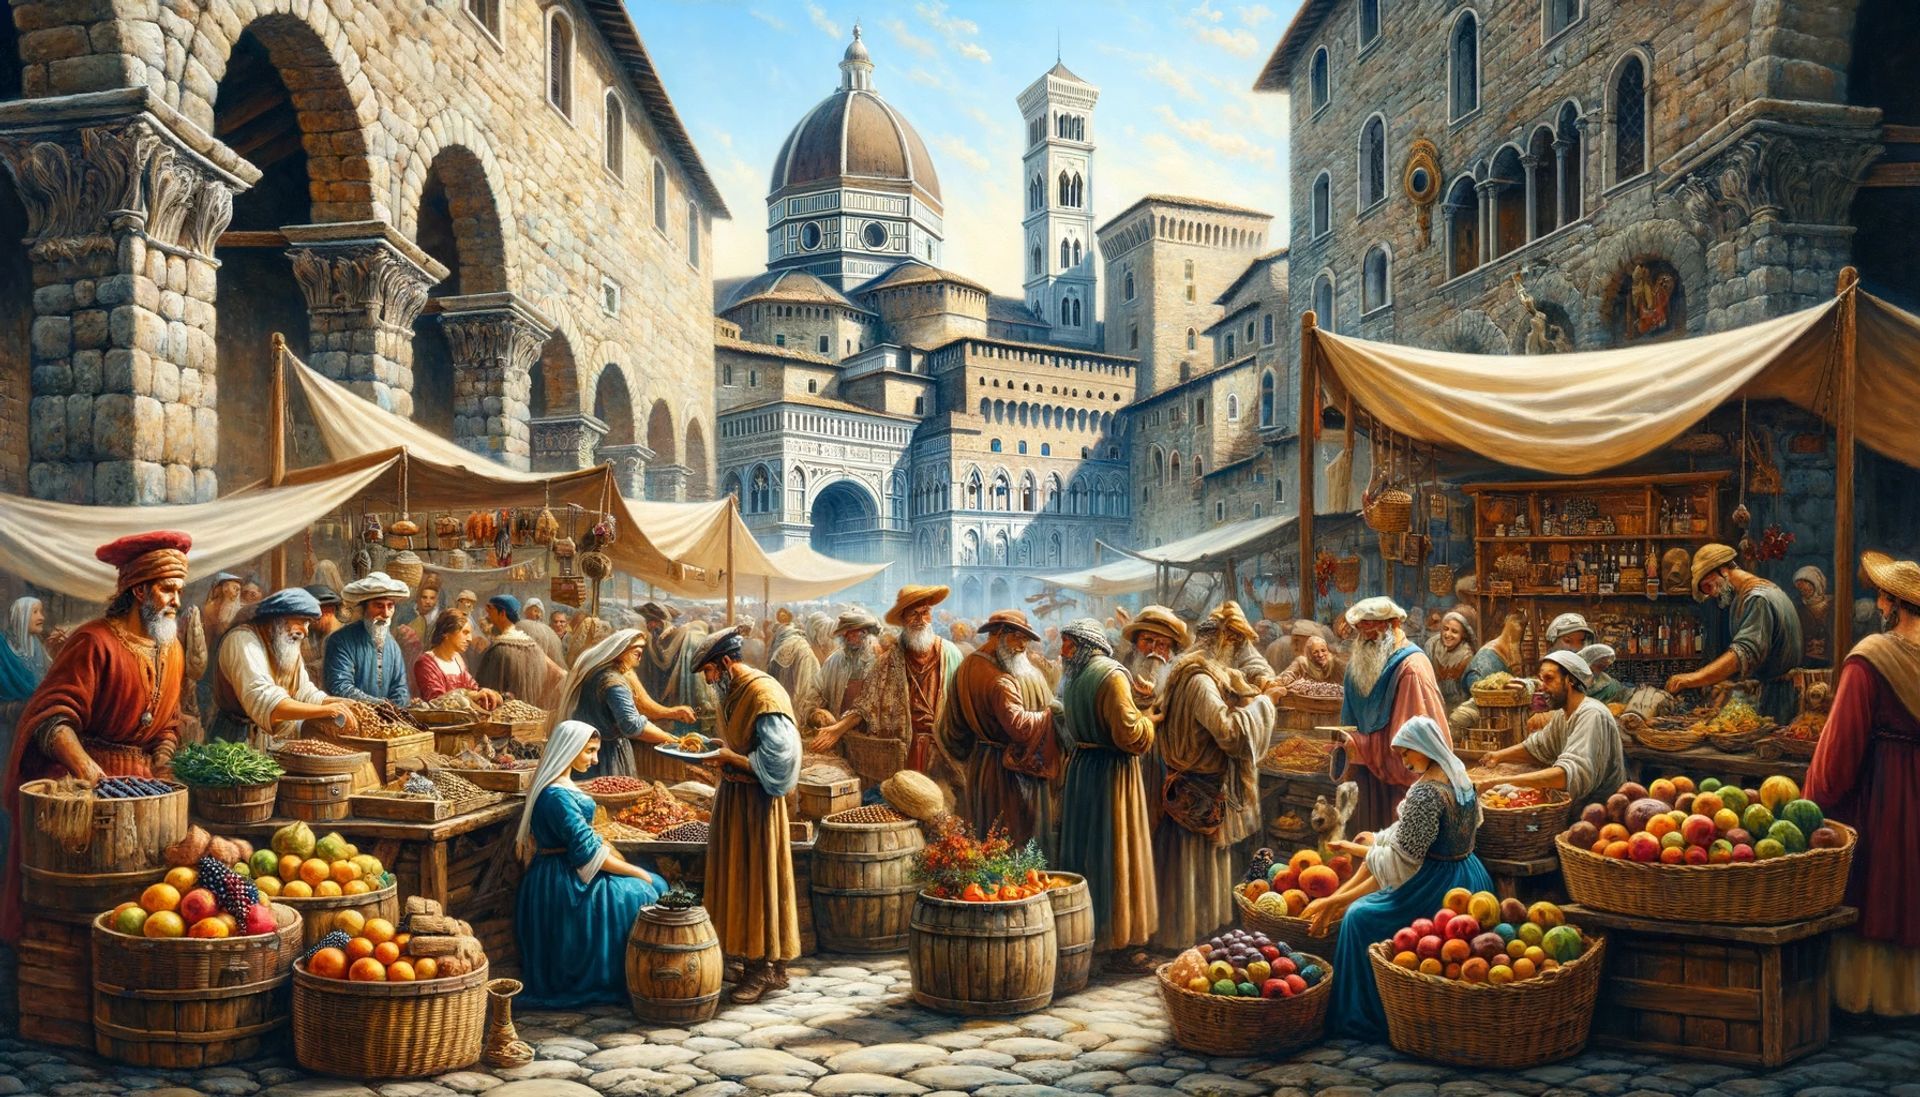 Un marché médiéval génois animé, où les marchands vendaient des épices des Indes orientales et divers autres produits.